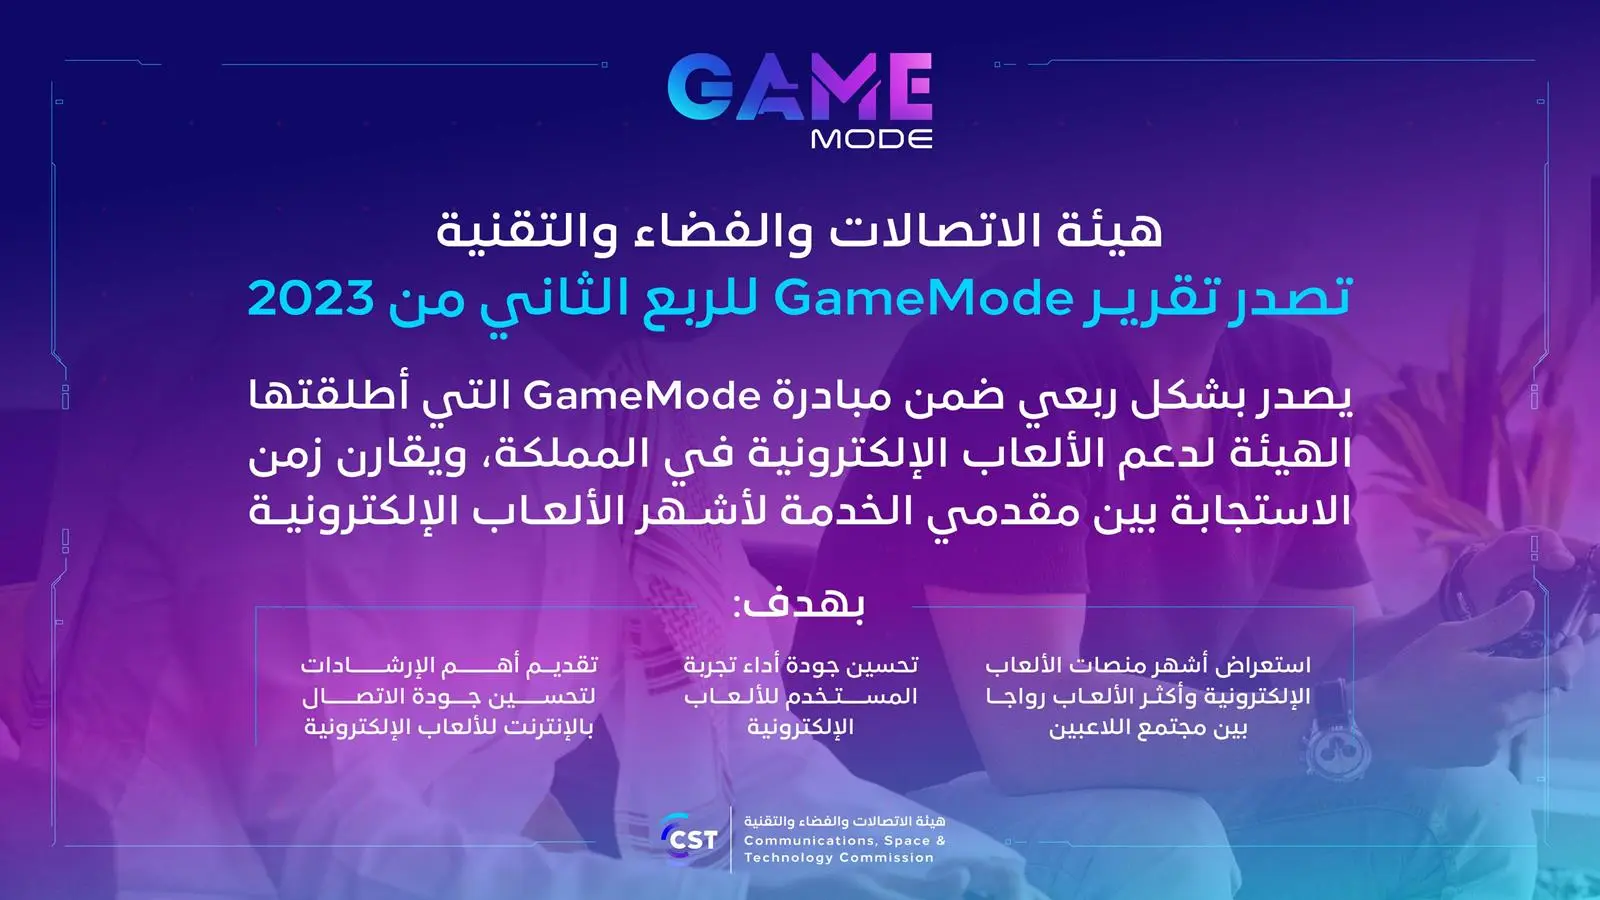 هيئة الاتصالات والفضاء والتقنية تصدر تقرير Game Mode للربع الثاني من عام 2023م